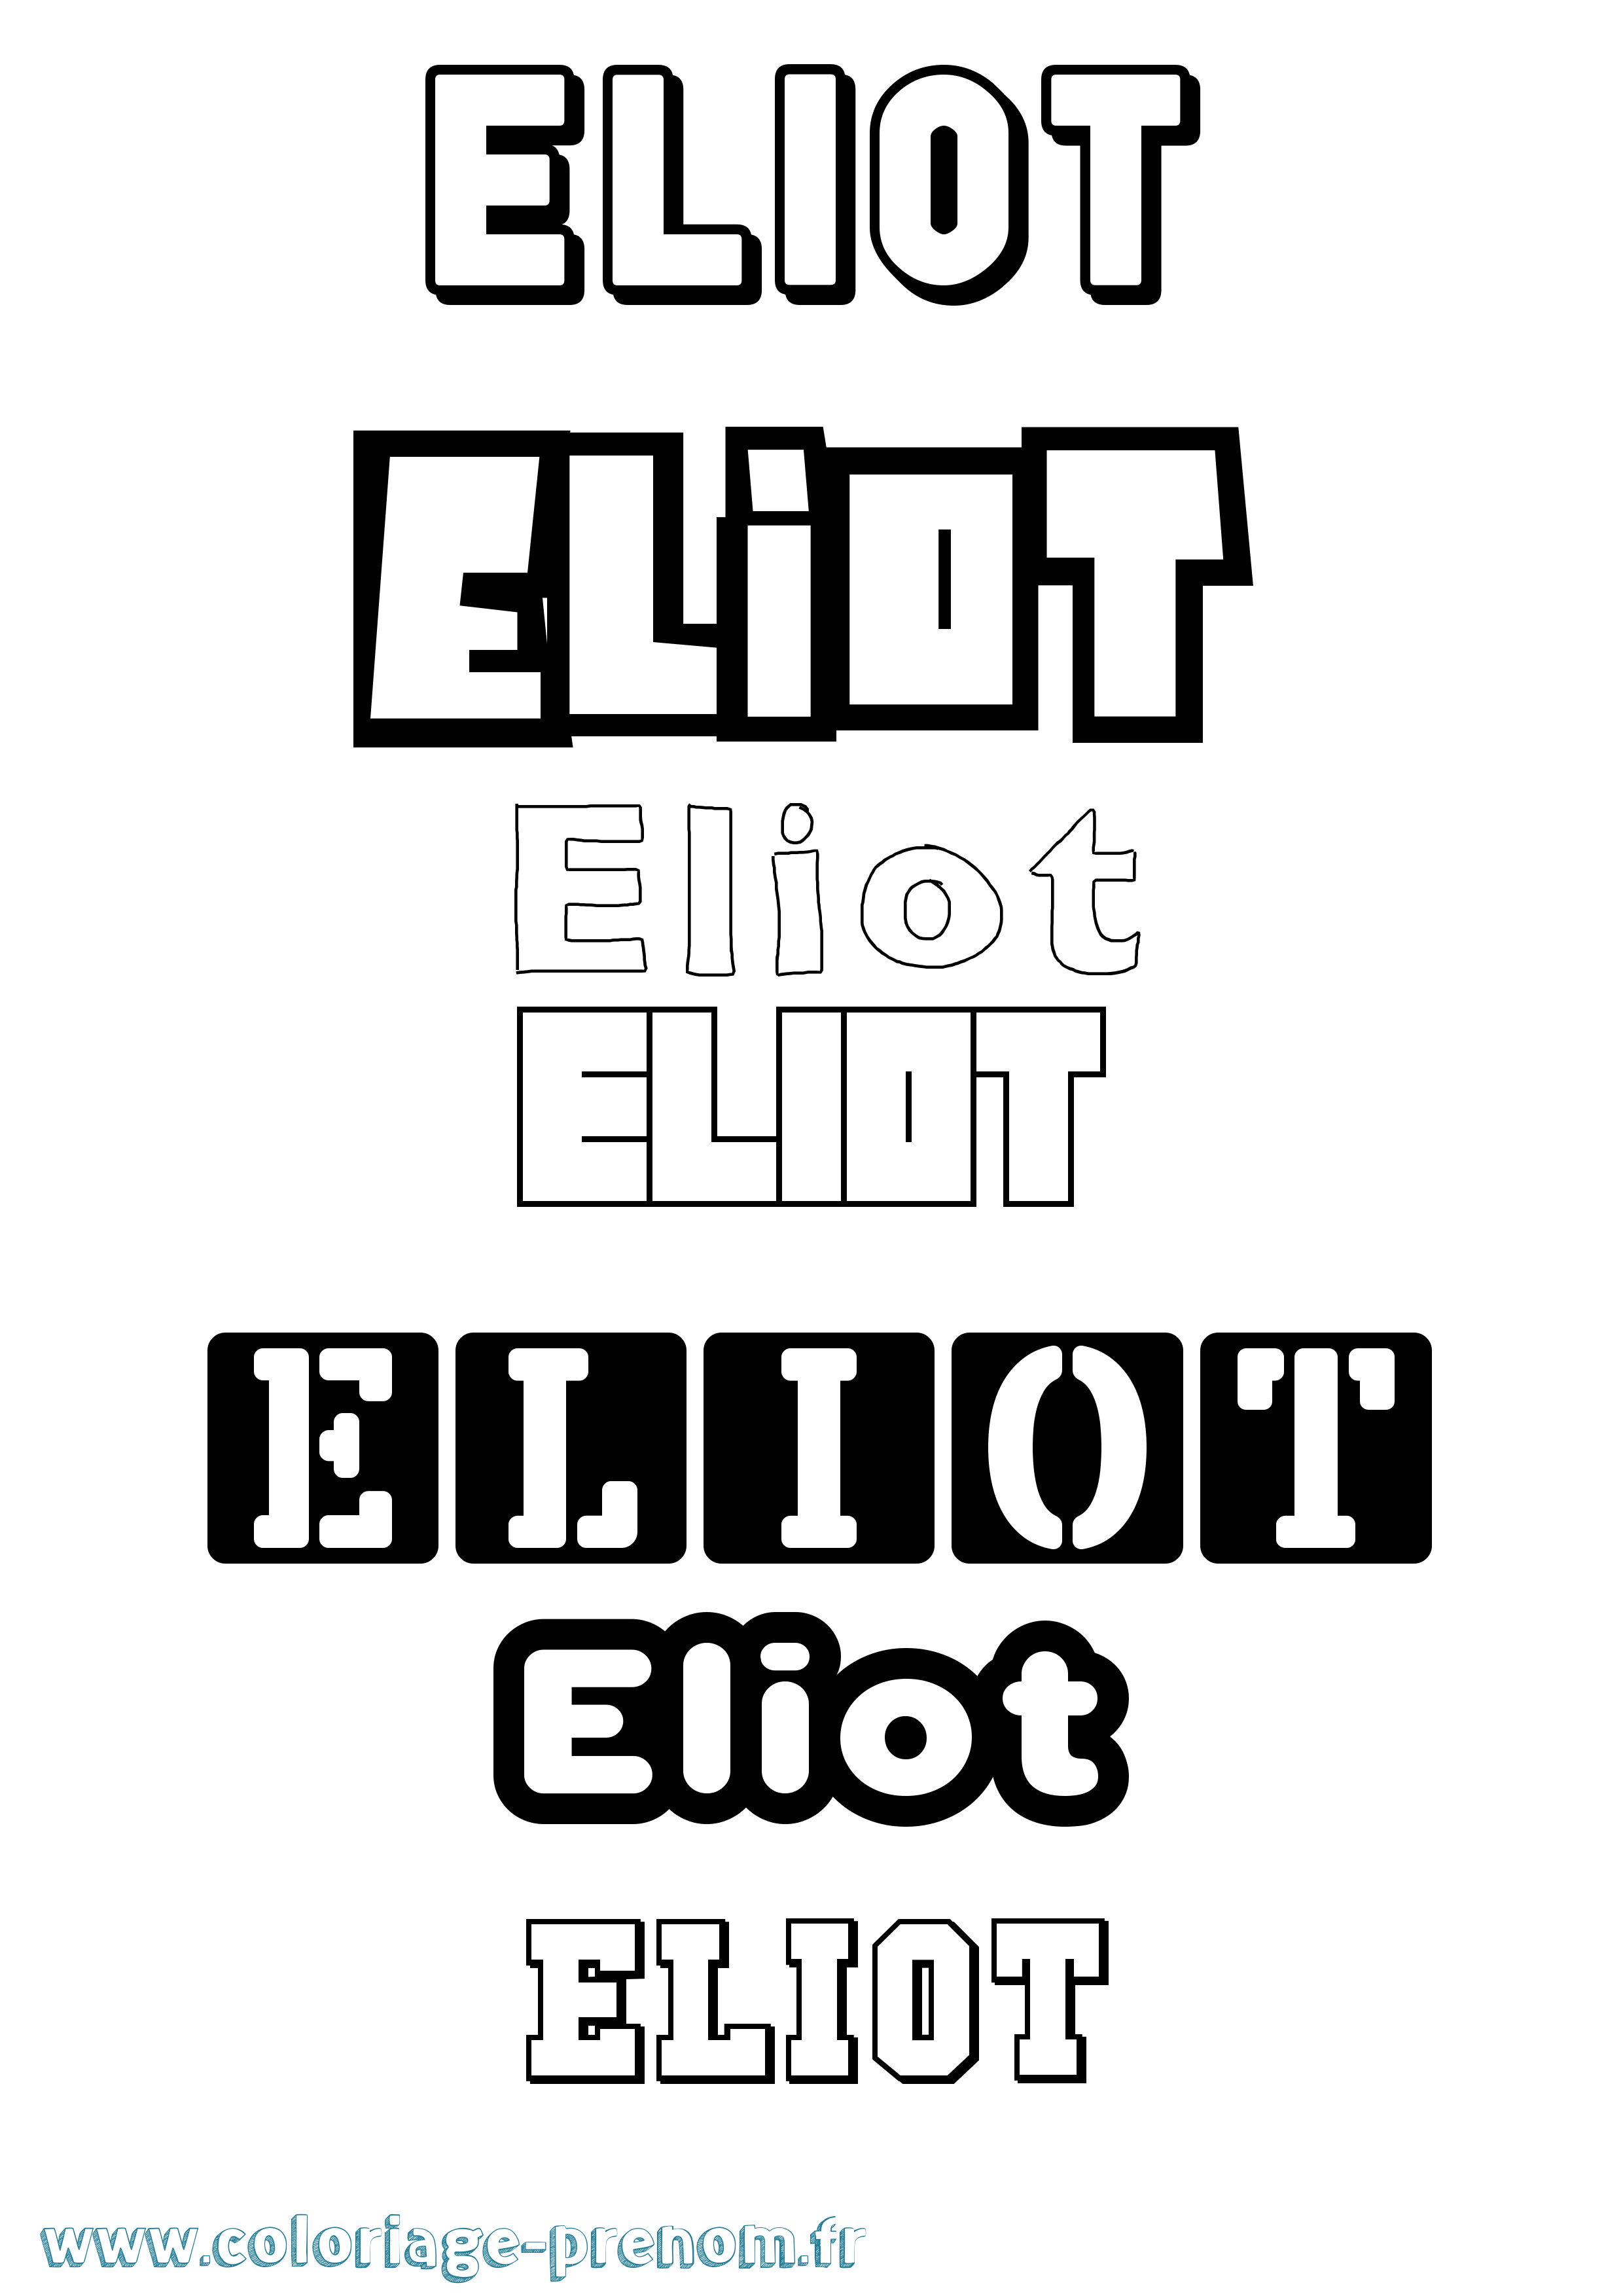 Coloriage prénom Eliot